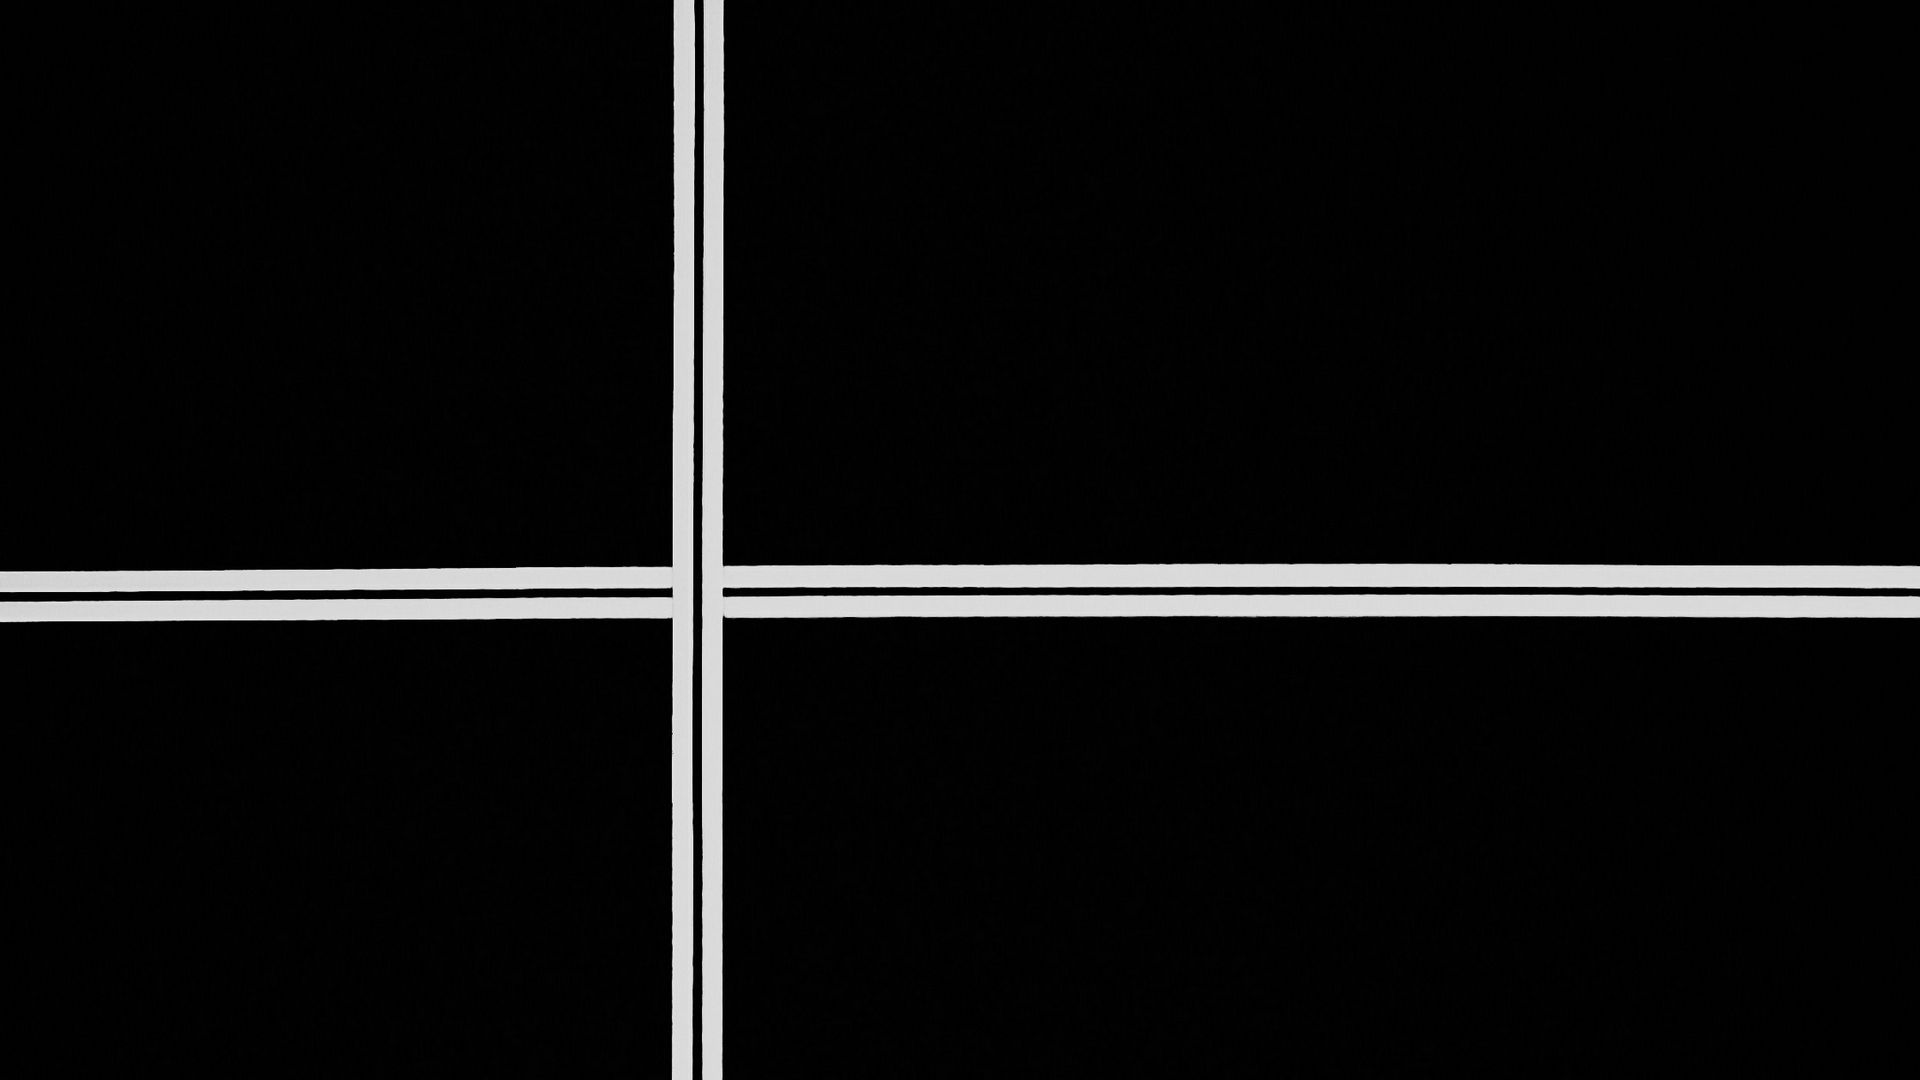 Download wallpaper 1920x1080 strip, line, bw, black, white